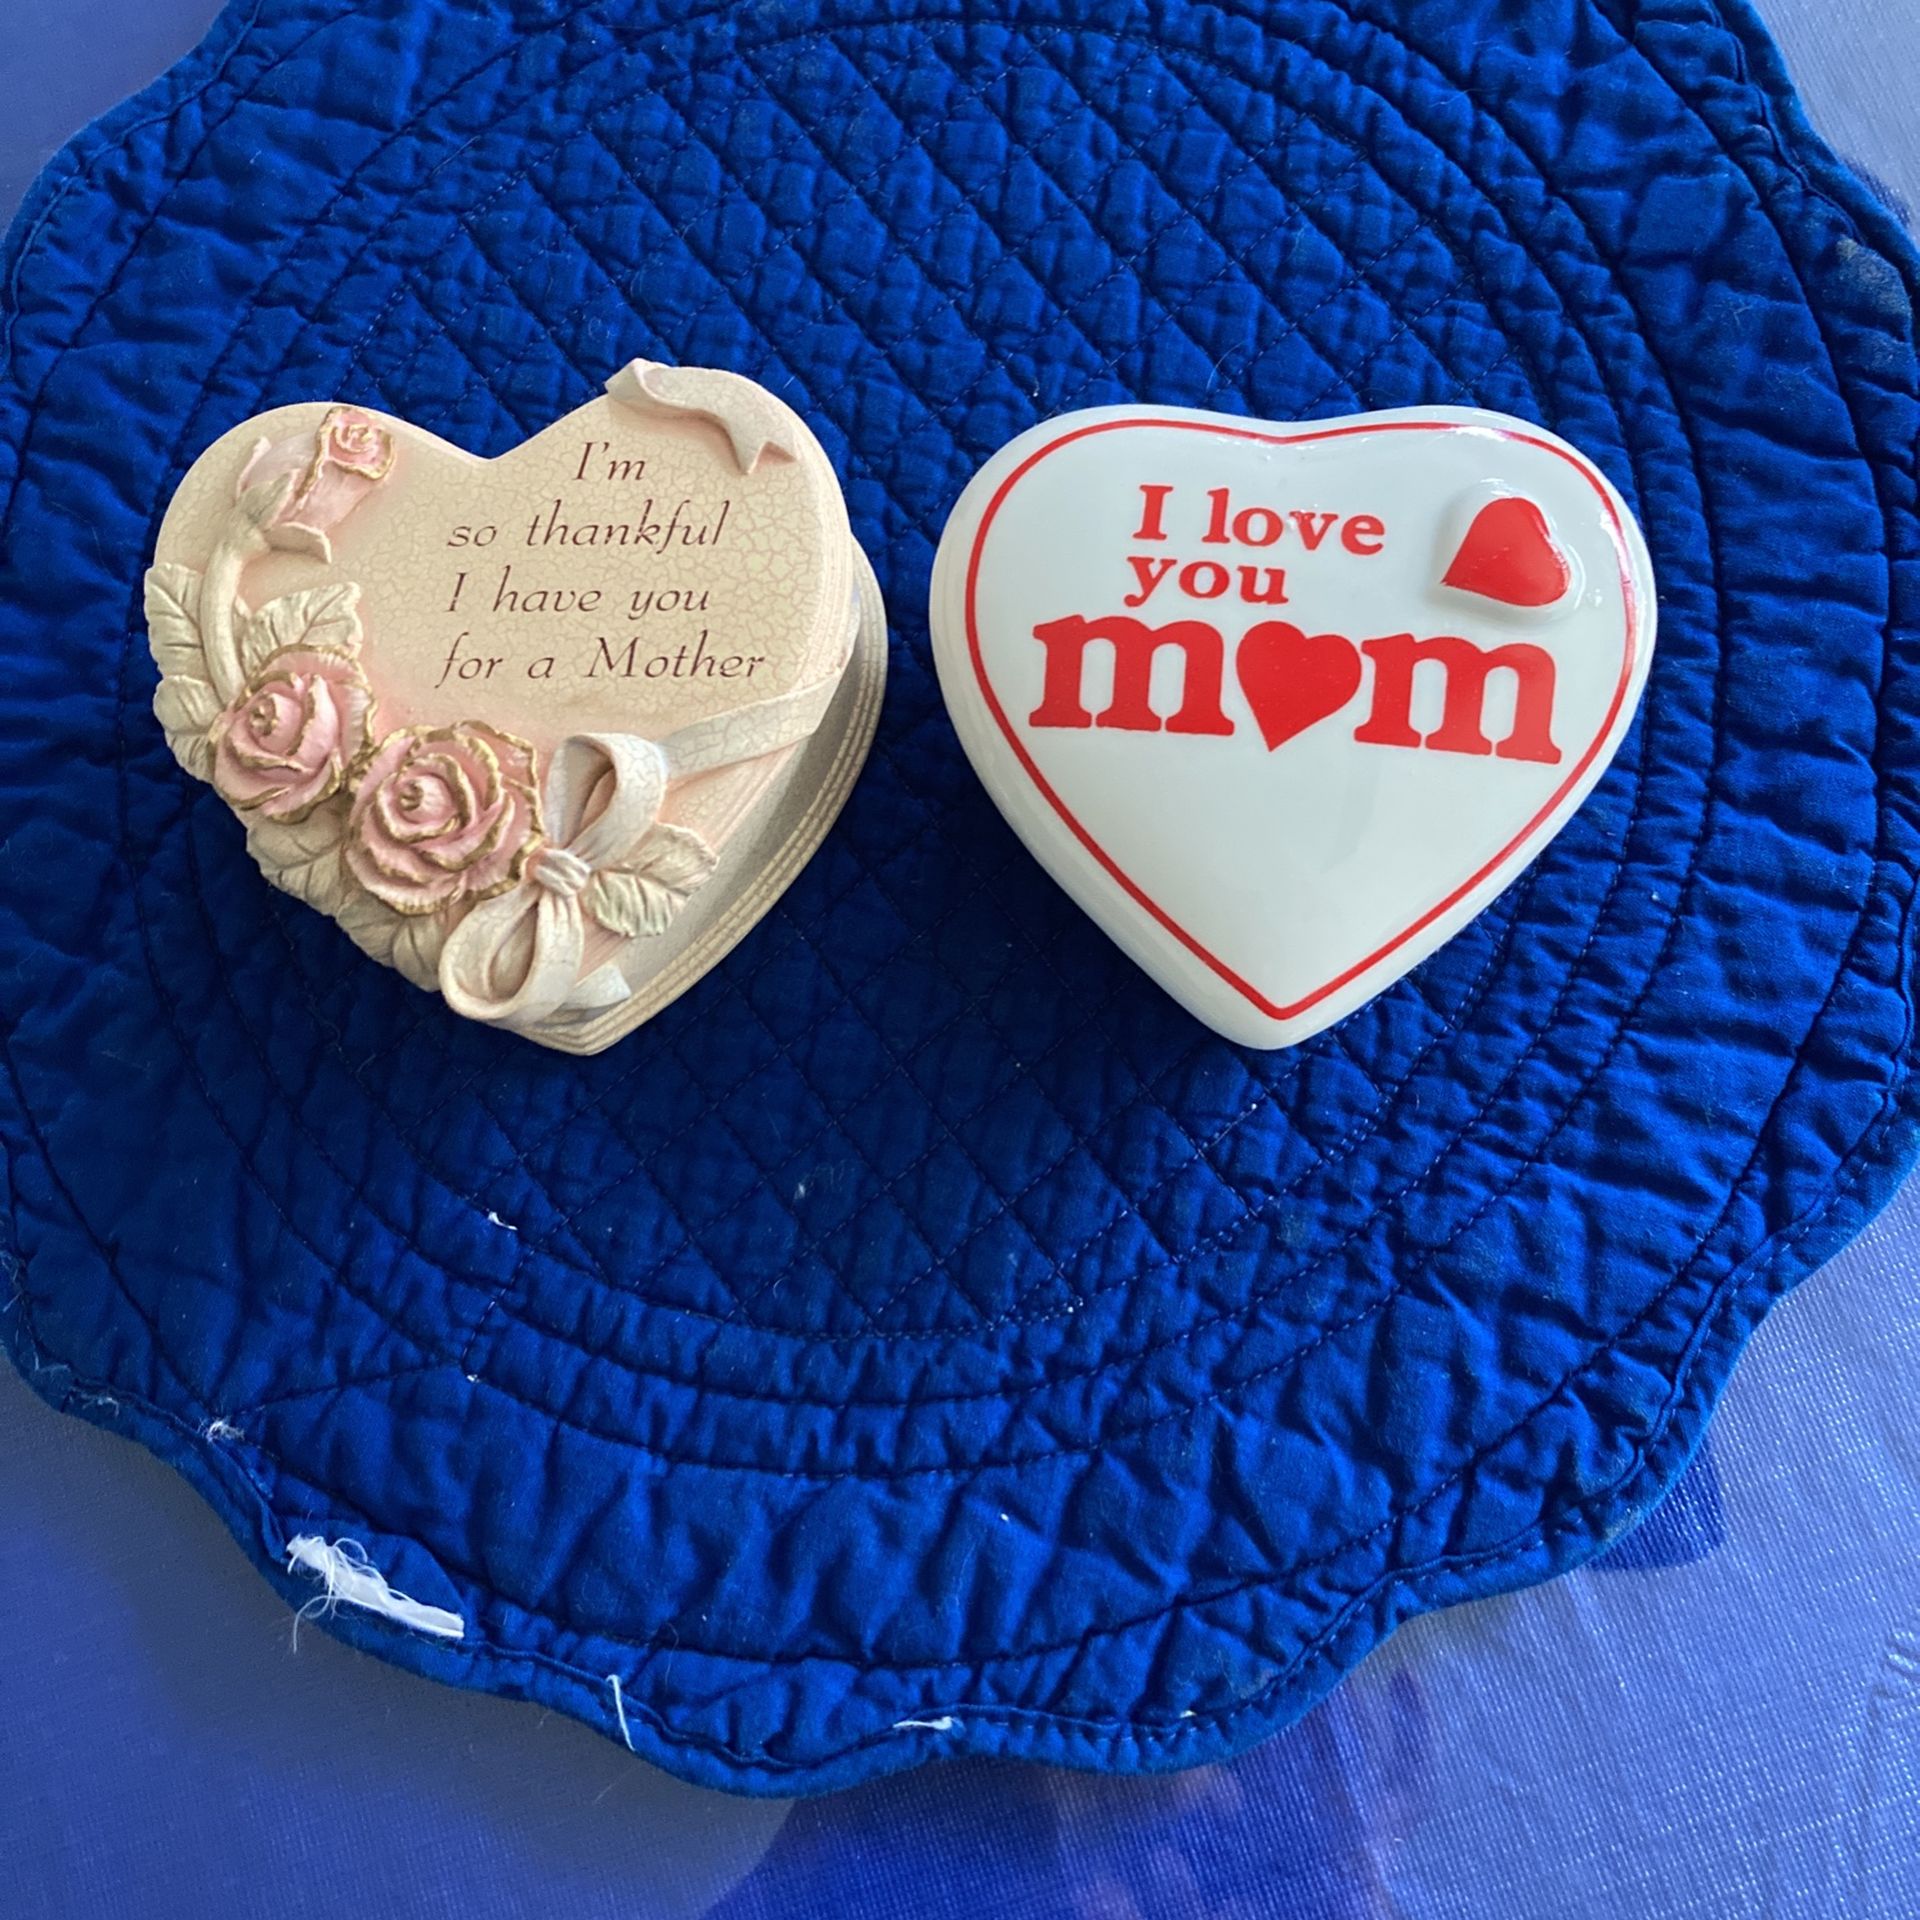 I LOVE MOM HEARTS - Ceramic